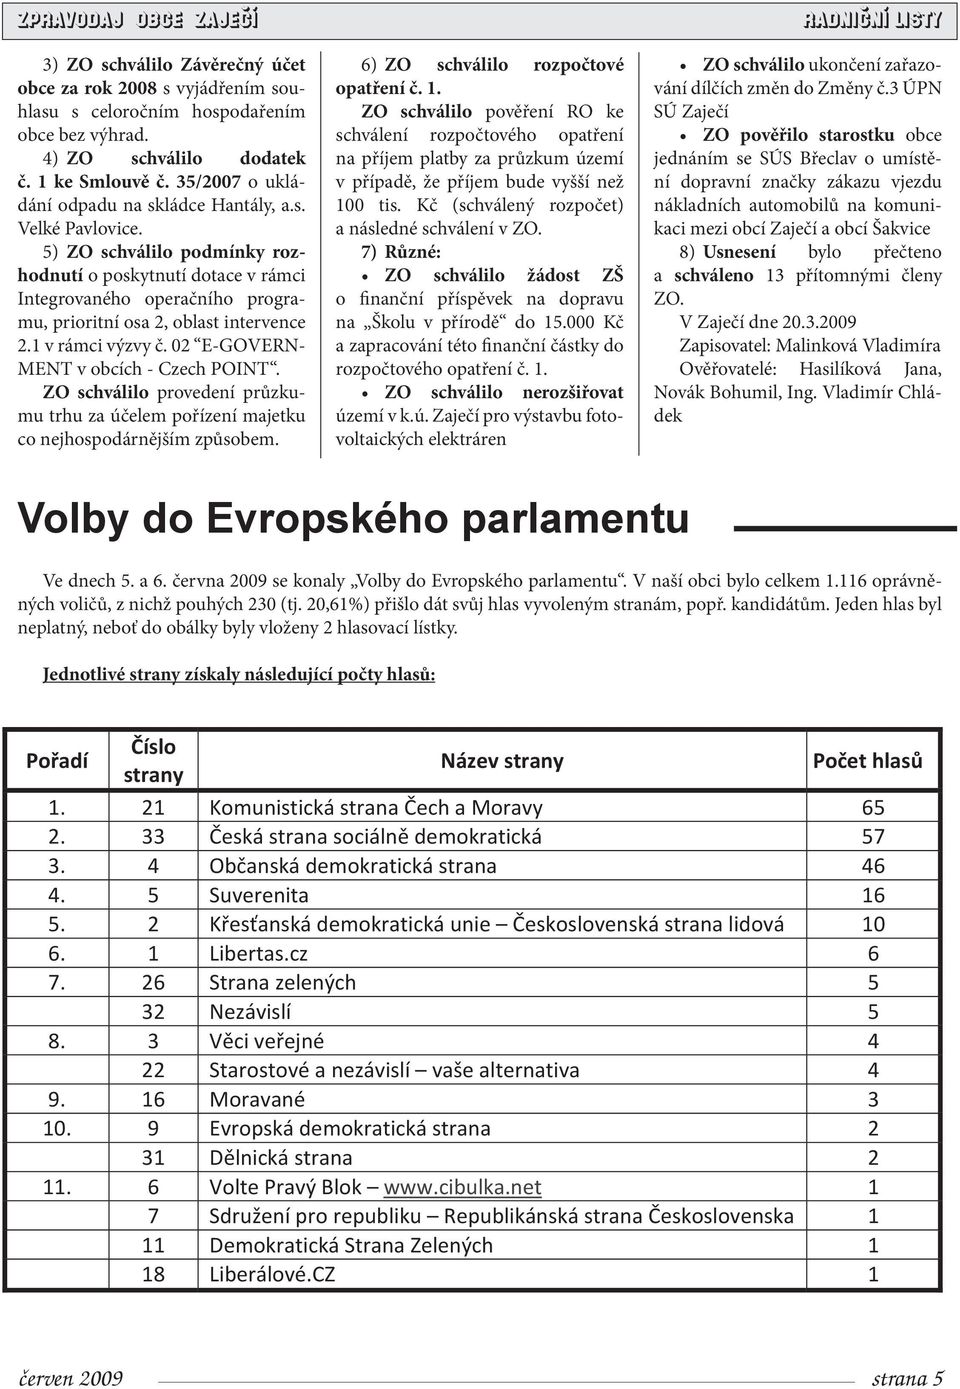 5) ZO schválilo podmínky rozhodnutí o poskytnutí dotace v rámci Integrovaného operačního programu, prioritní osa 2, oblast intervence 2.1 v rámci výzvy č. 02 E-GOVERN- MENT v obcích - Czech POINT.